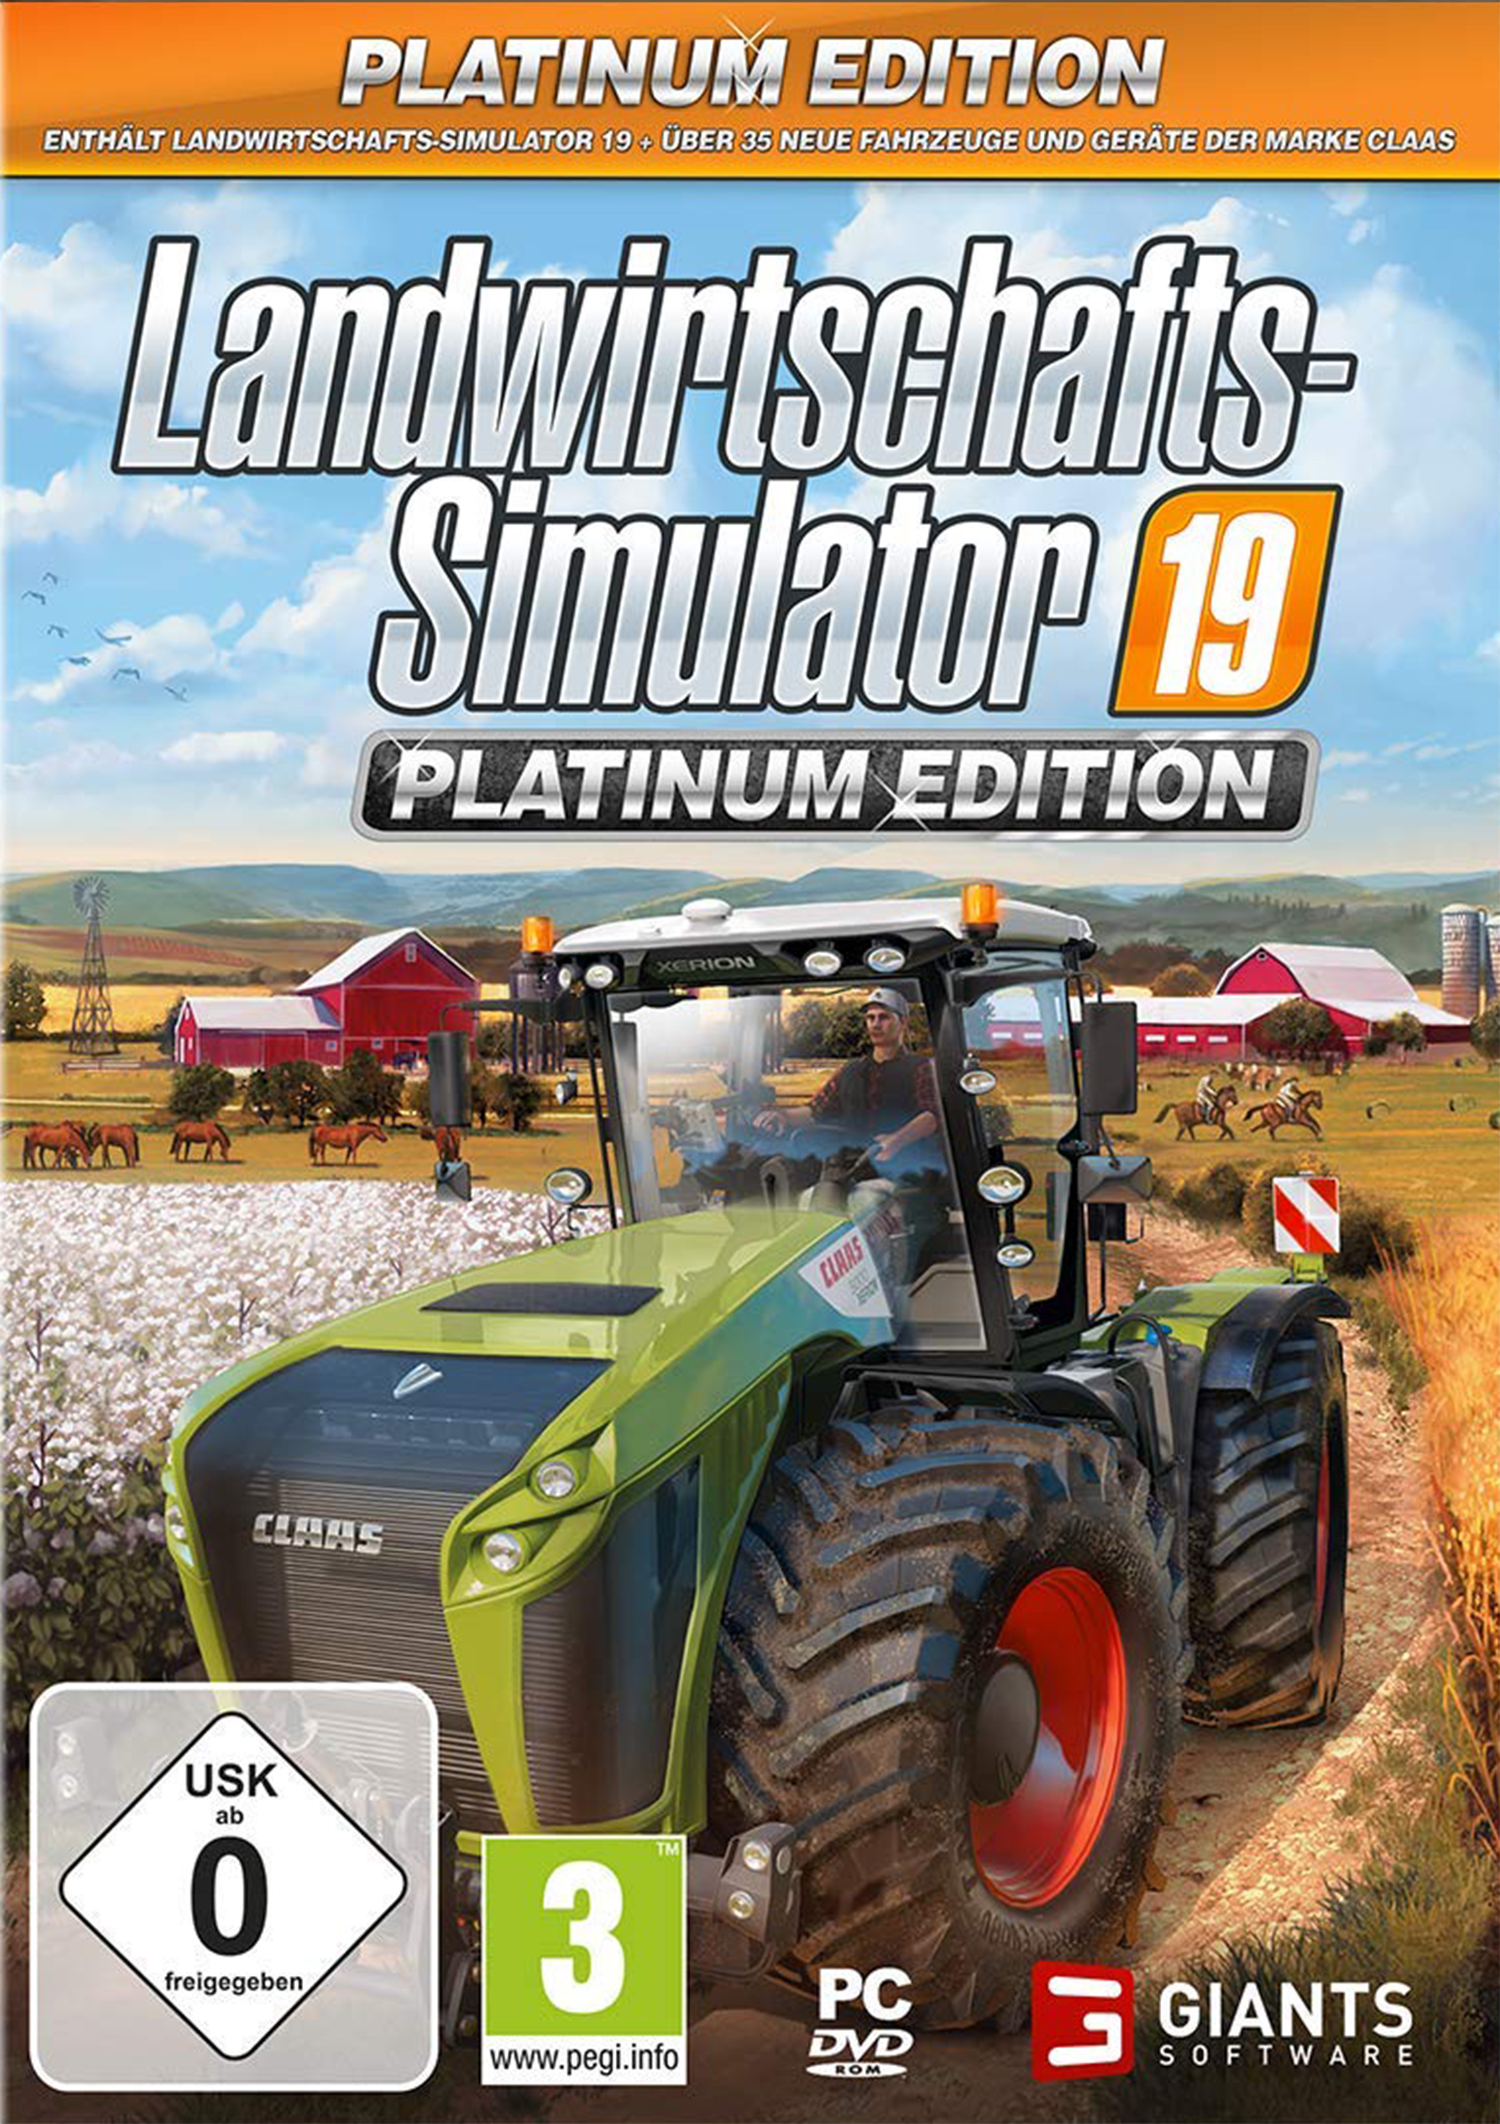 Platinum - [Game Landwirtschafts-Simulator 19: Boy] Edition